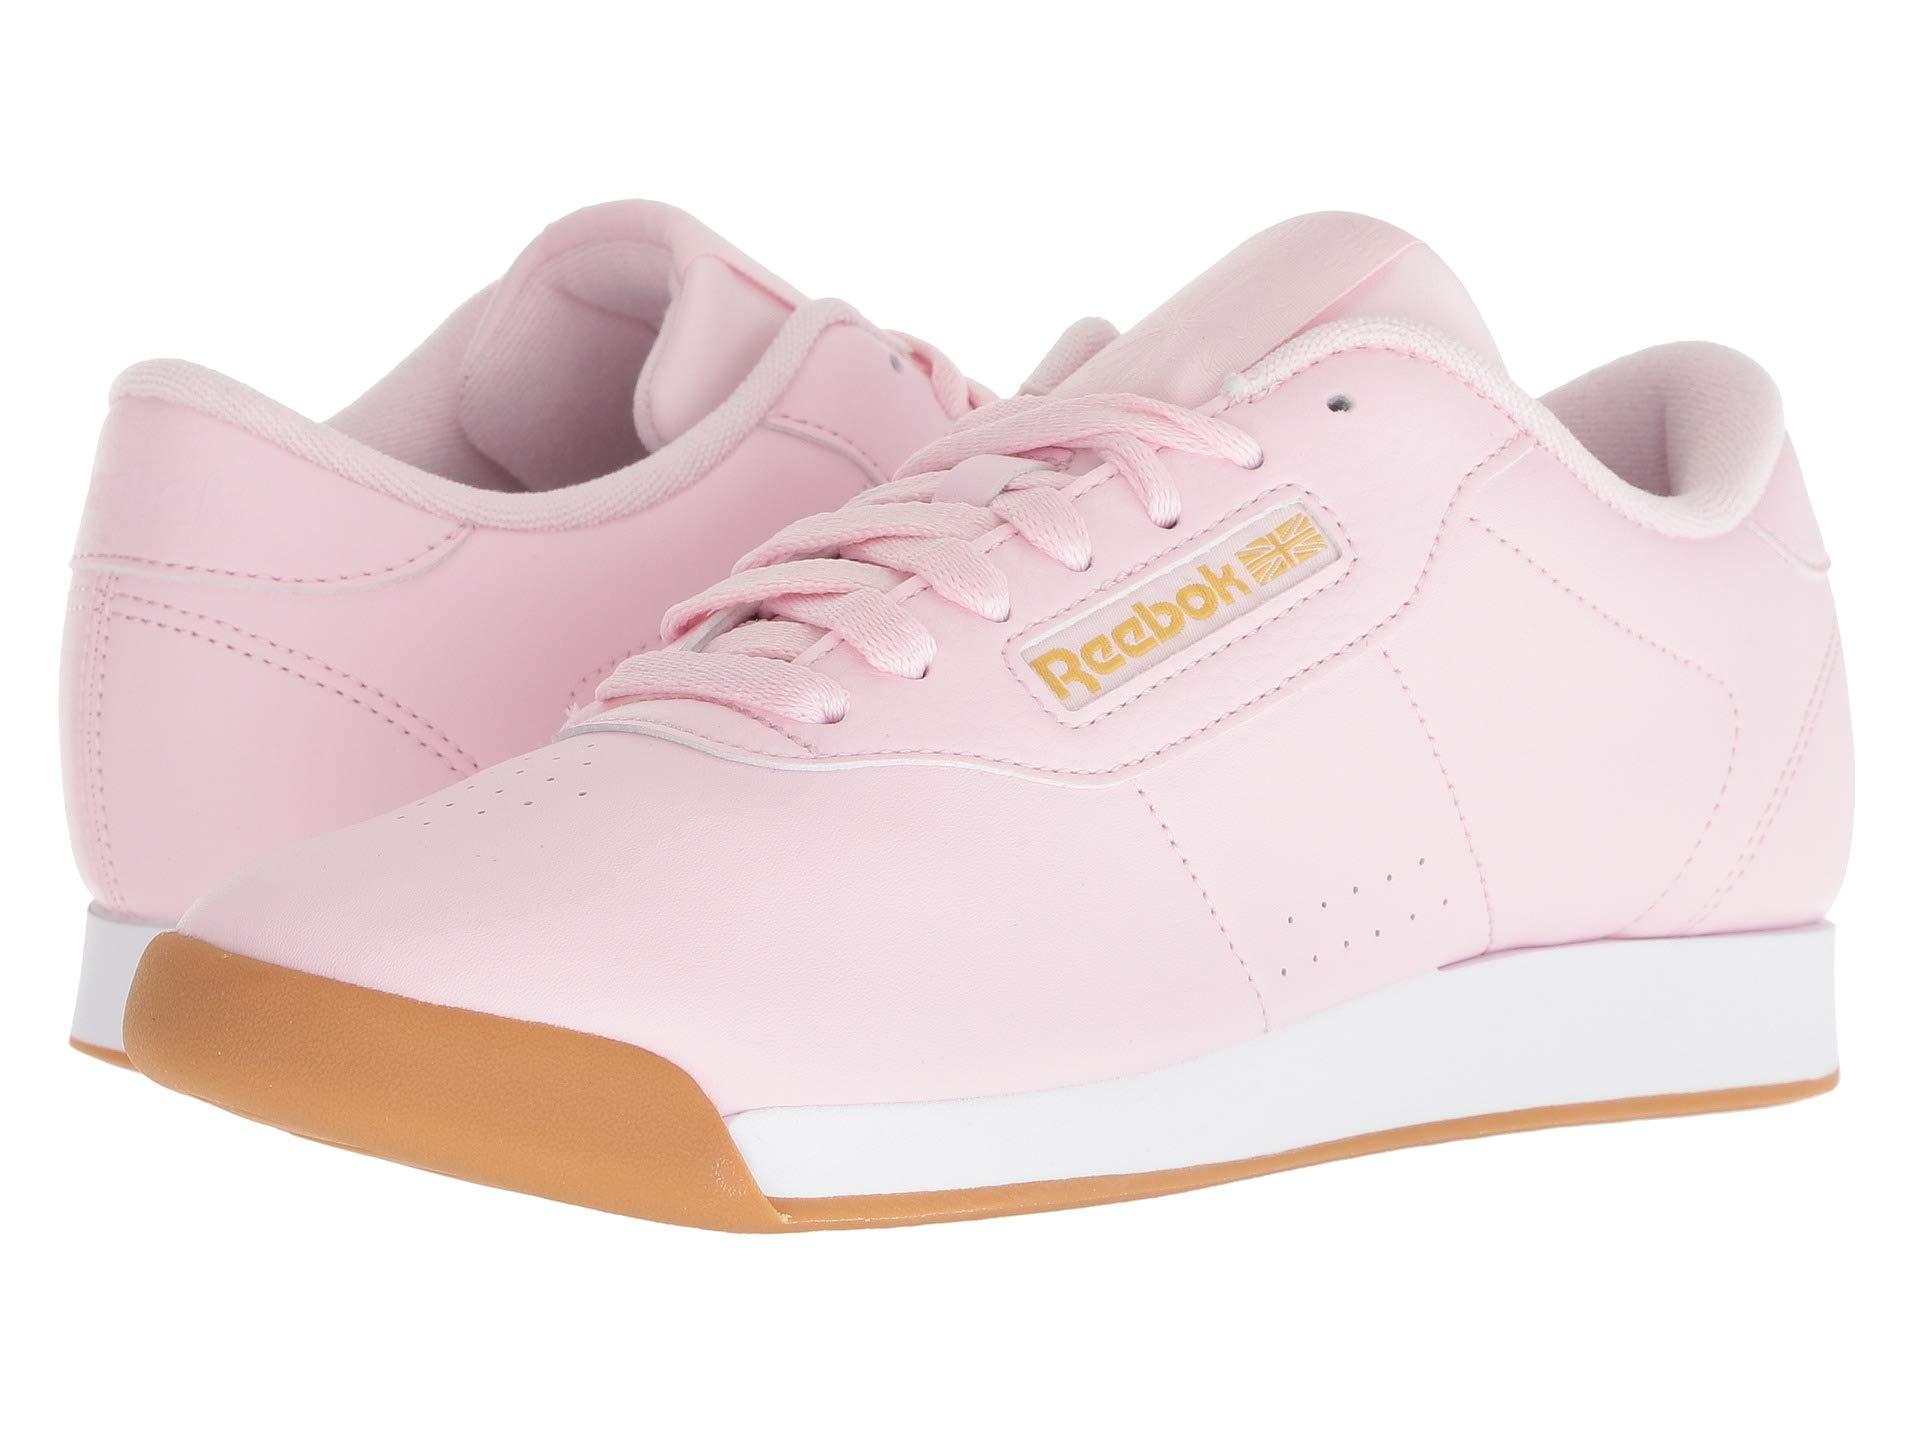 Reebok Princess Sneaker in Pink/White/Gold Metallic (Pink) - Save 52% - Lyst